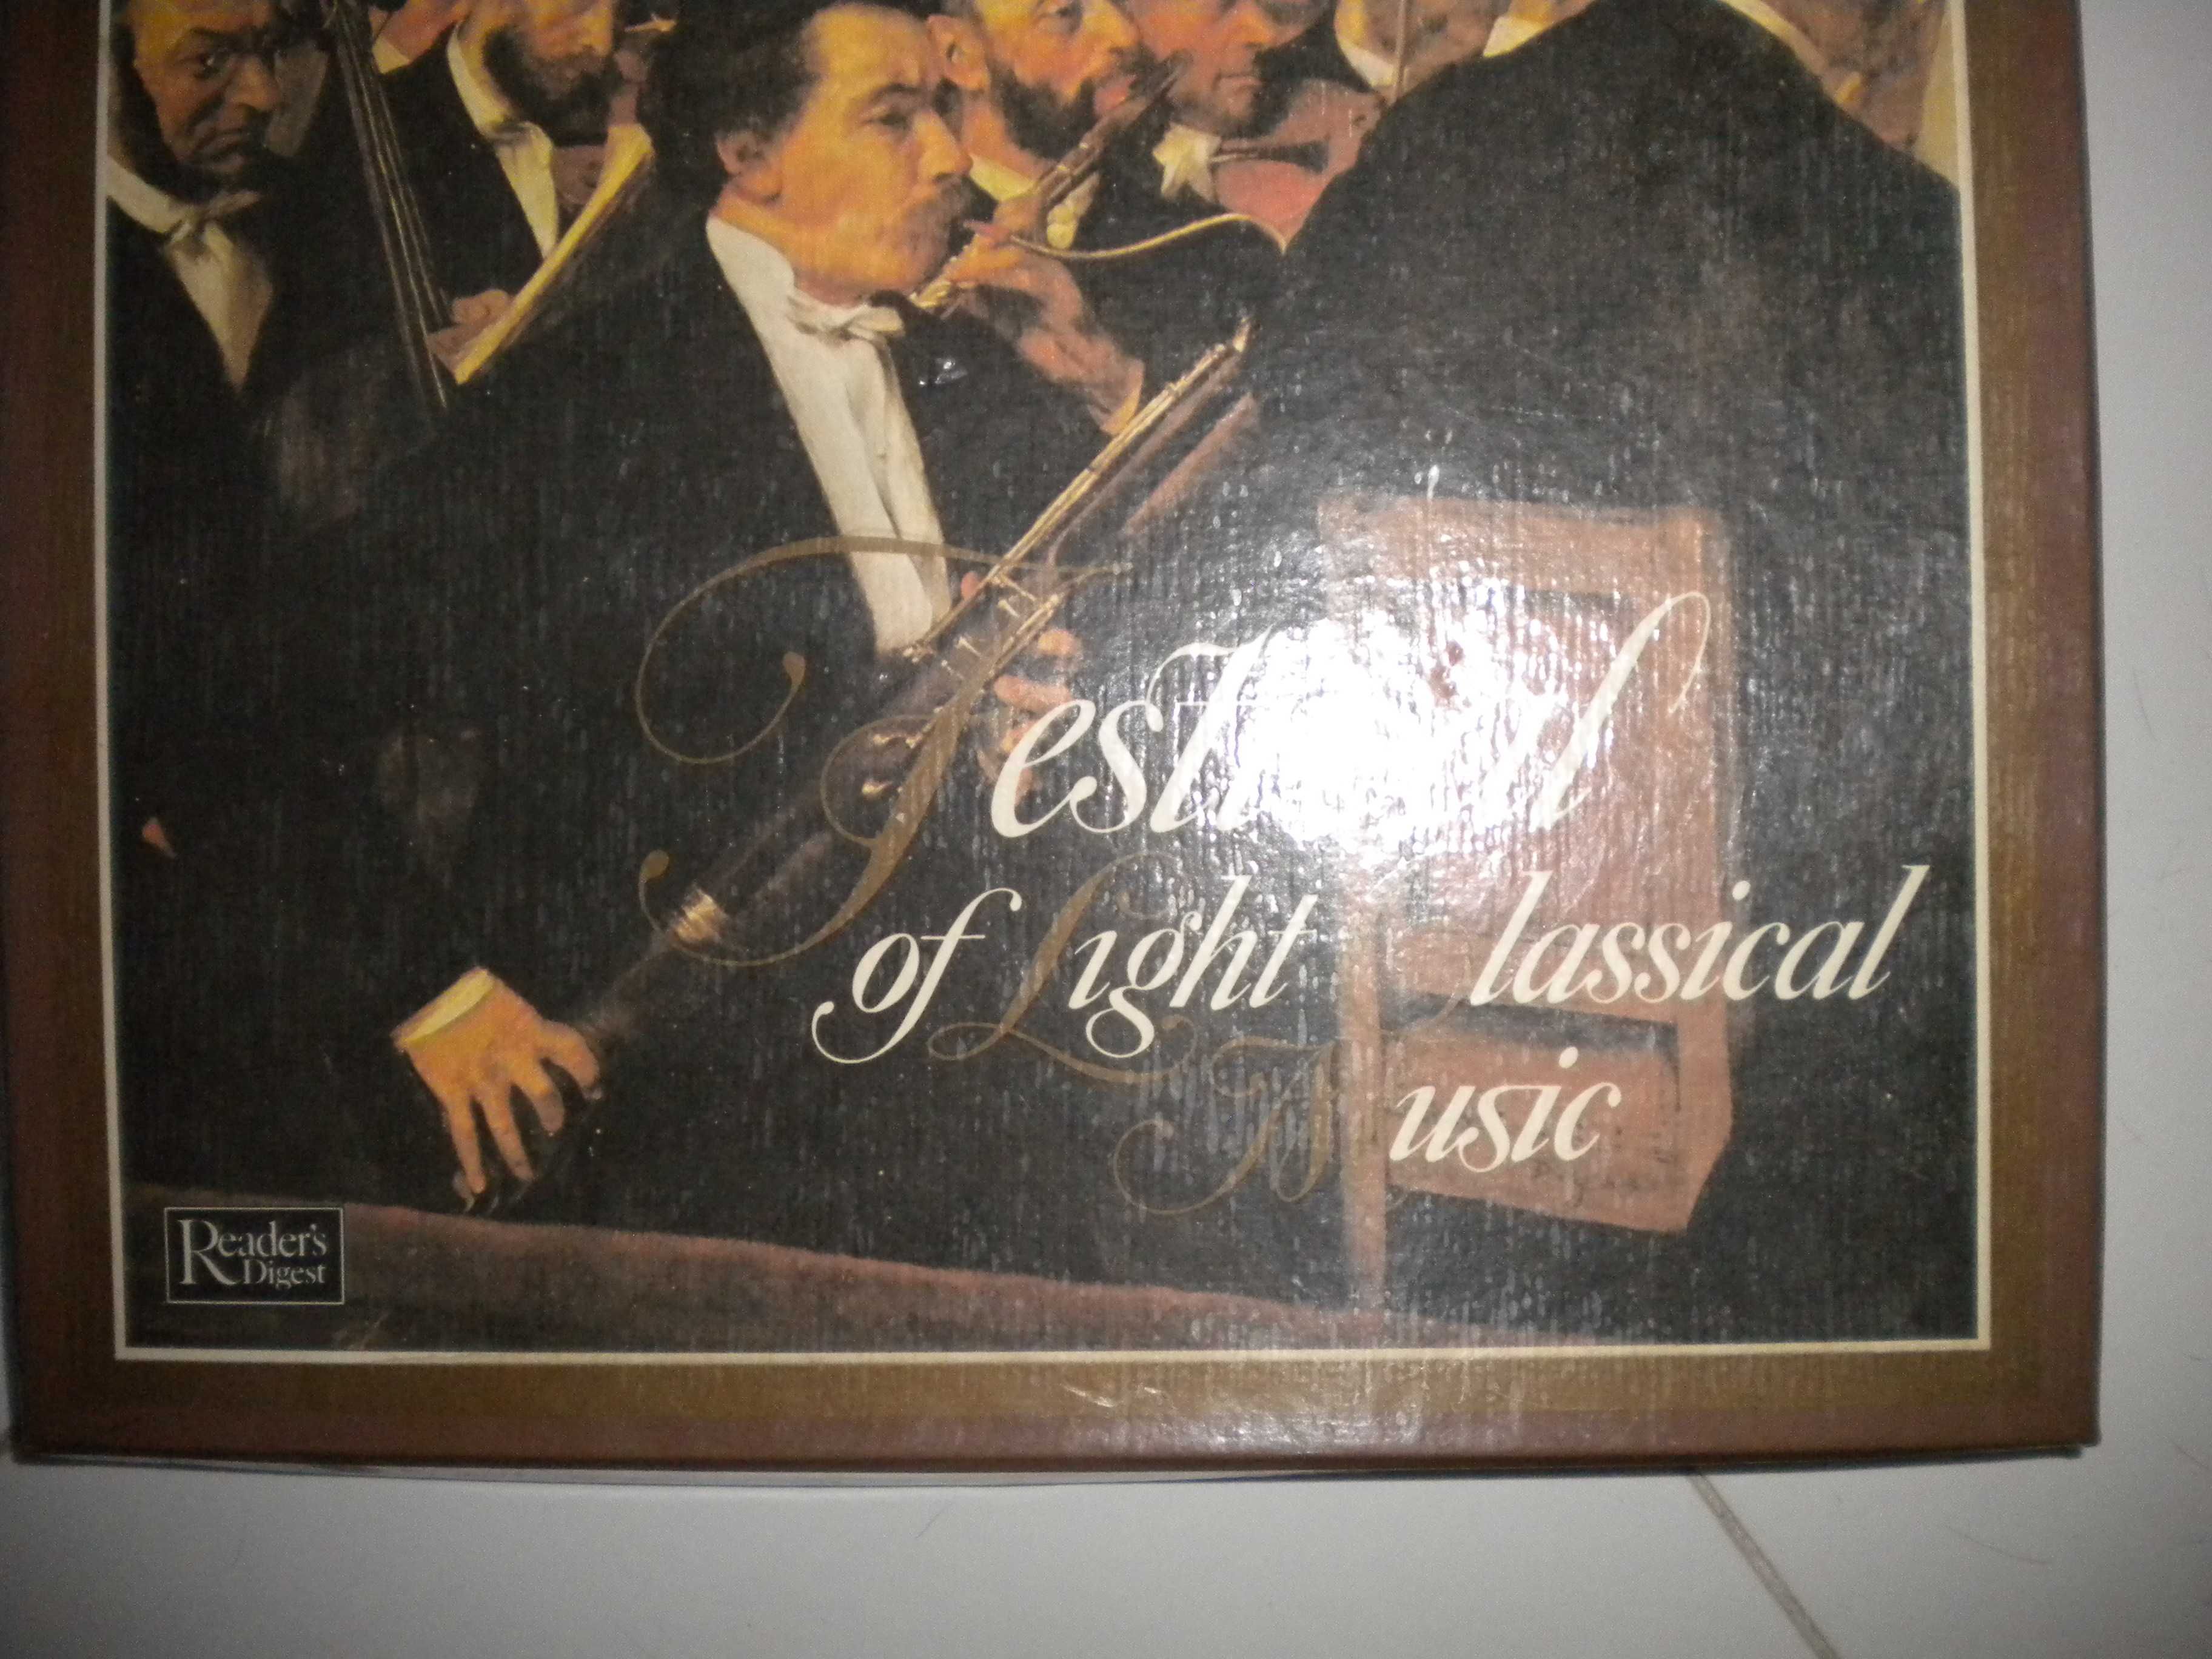 Discos Vinil - Coleção Completa-  Festival of Light Classical Music